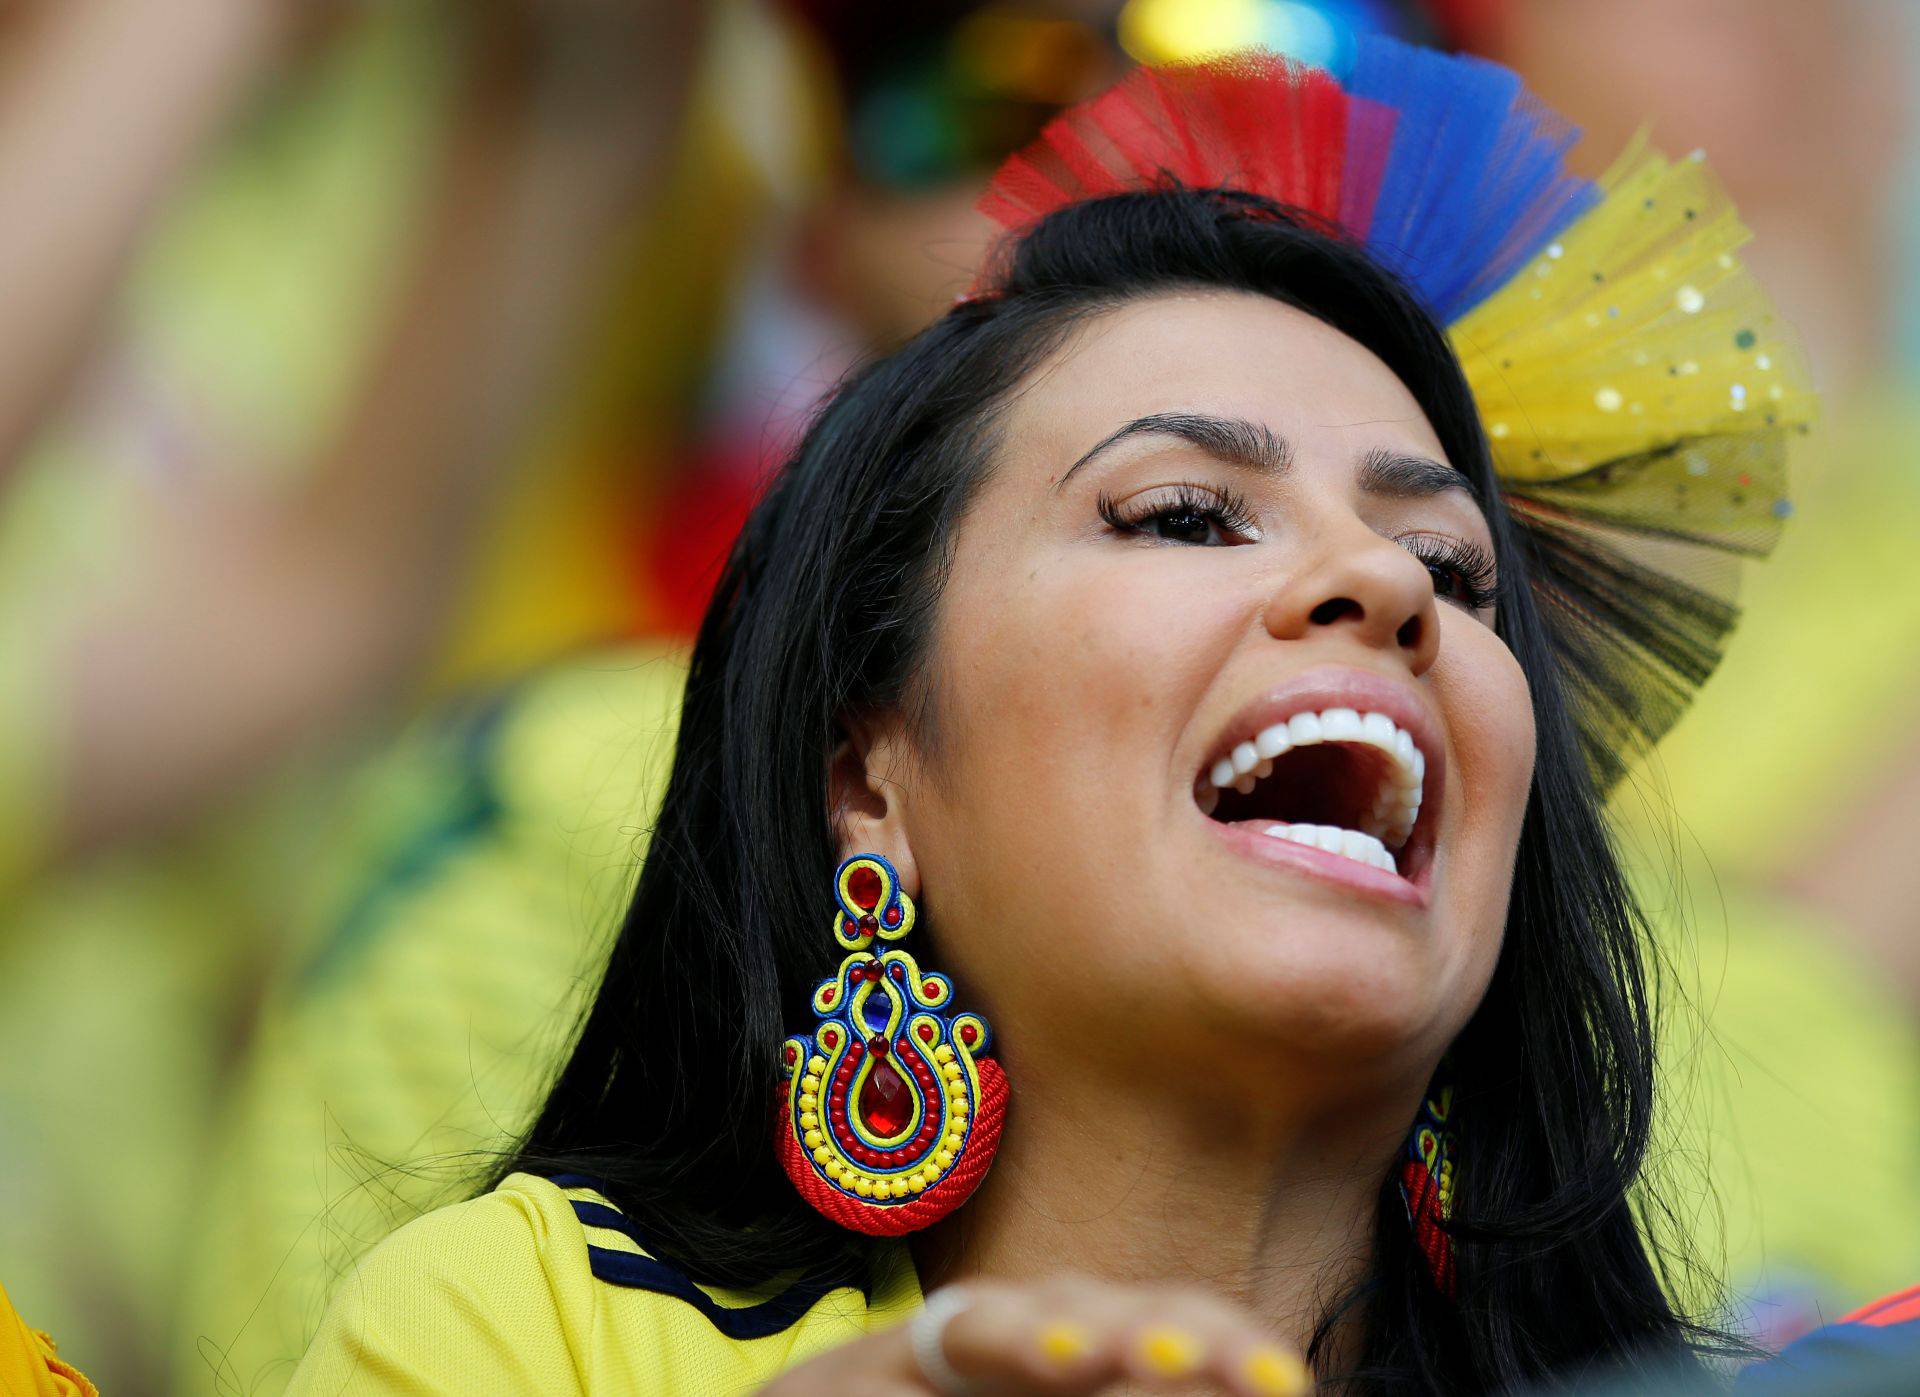 Brazil je favorit u finalu Cope, ali tko pobjeđuje na tribinama?